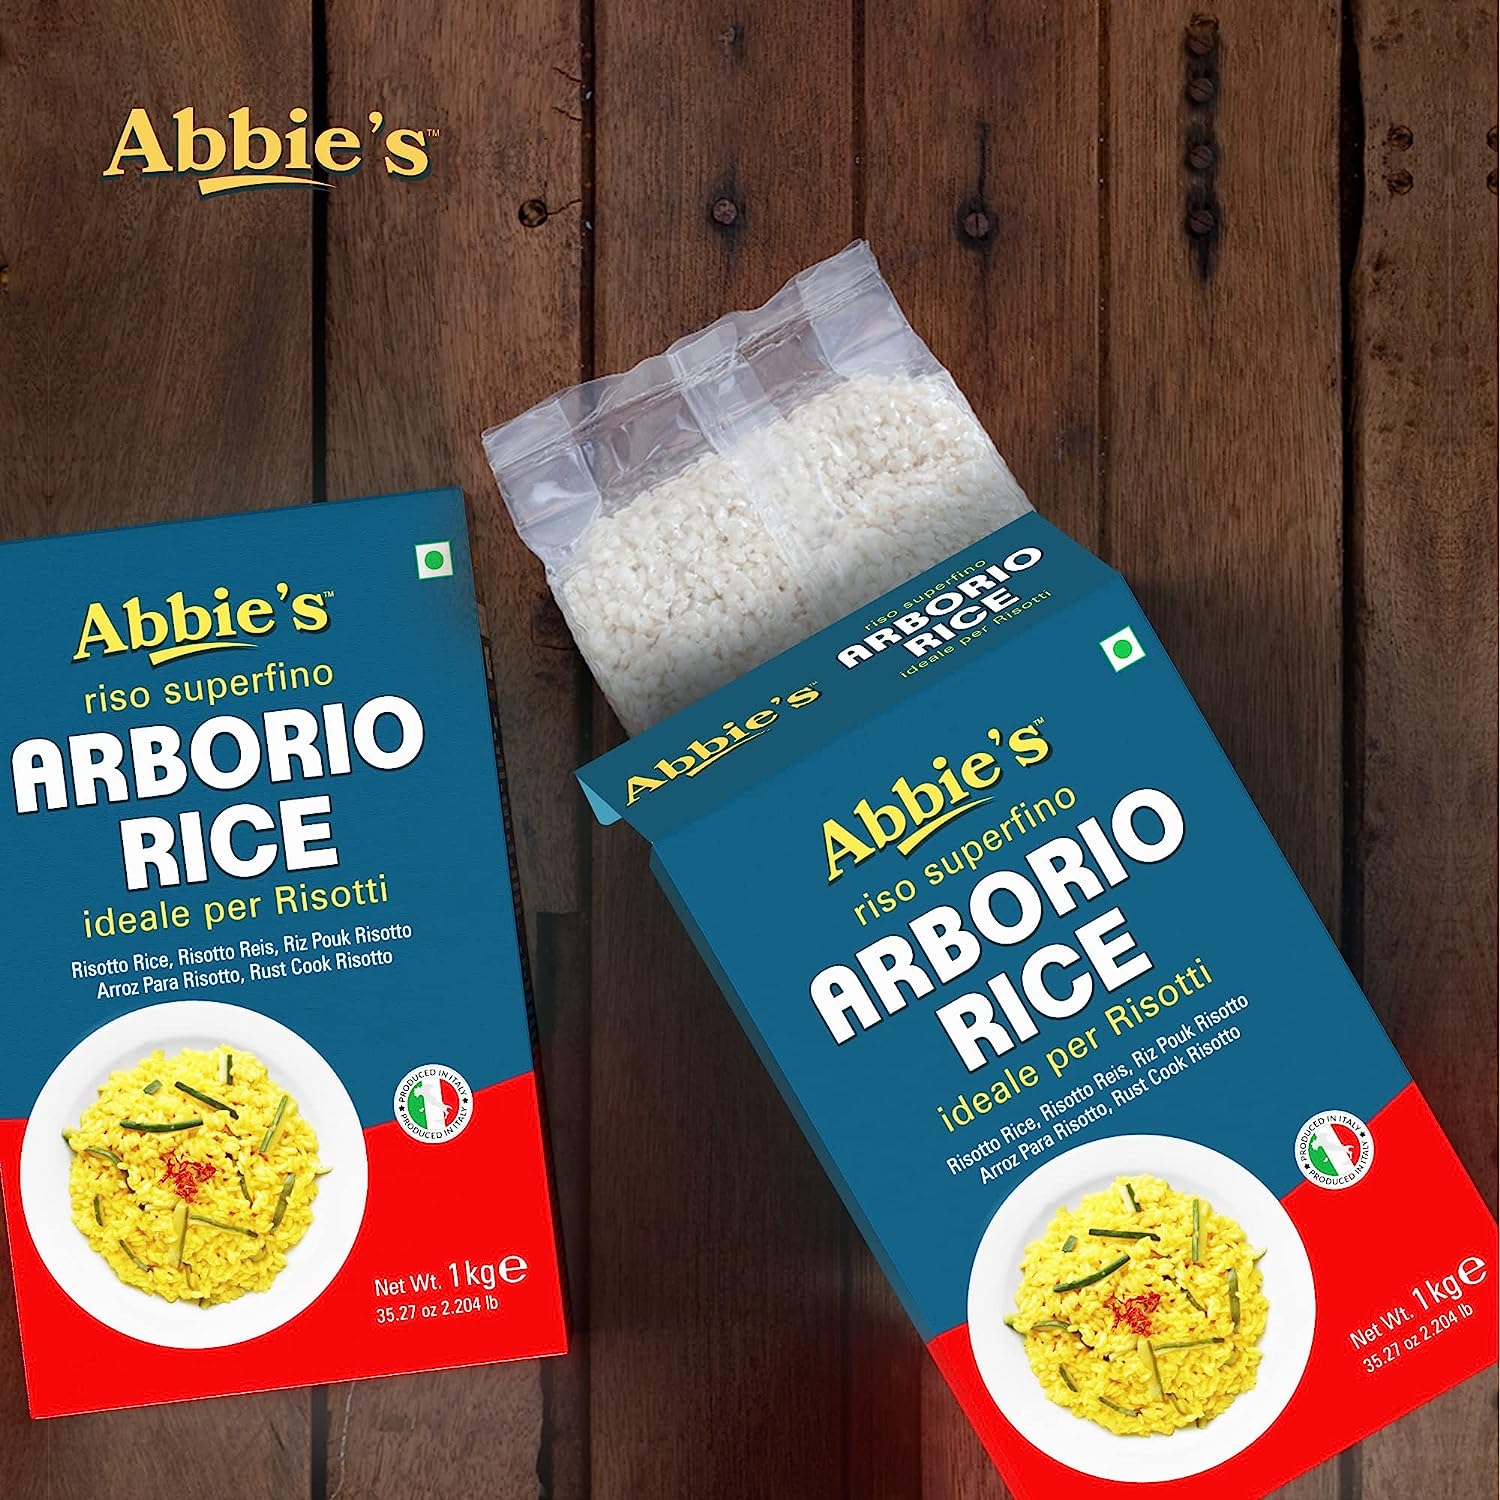 Abbie's Arborio Rice, 1Kg (Imported)